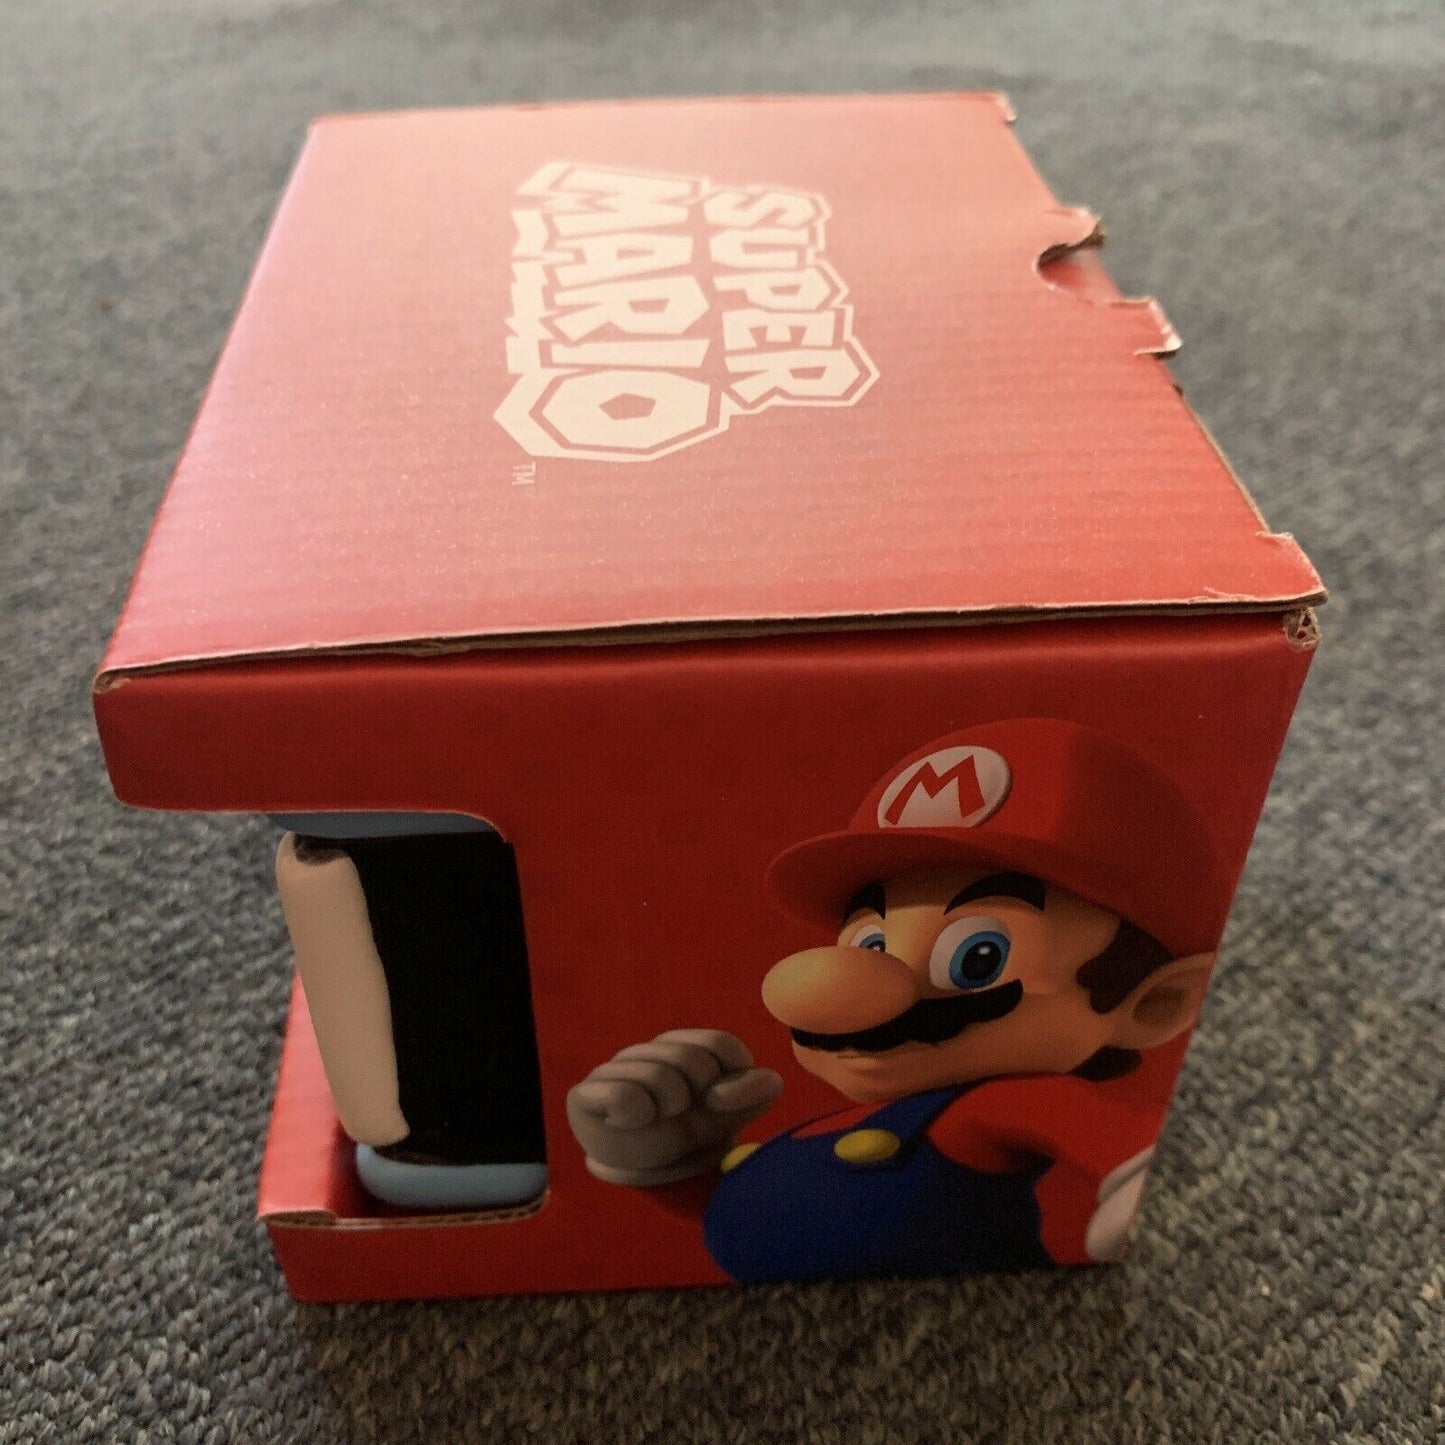 Super Mario Pow Block Mug Ceramic - Official Nintendo Licensed